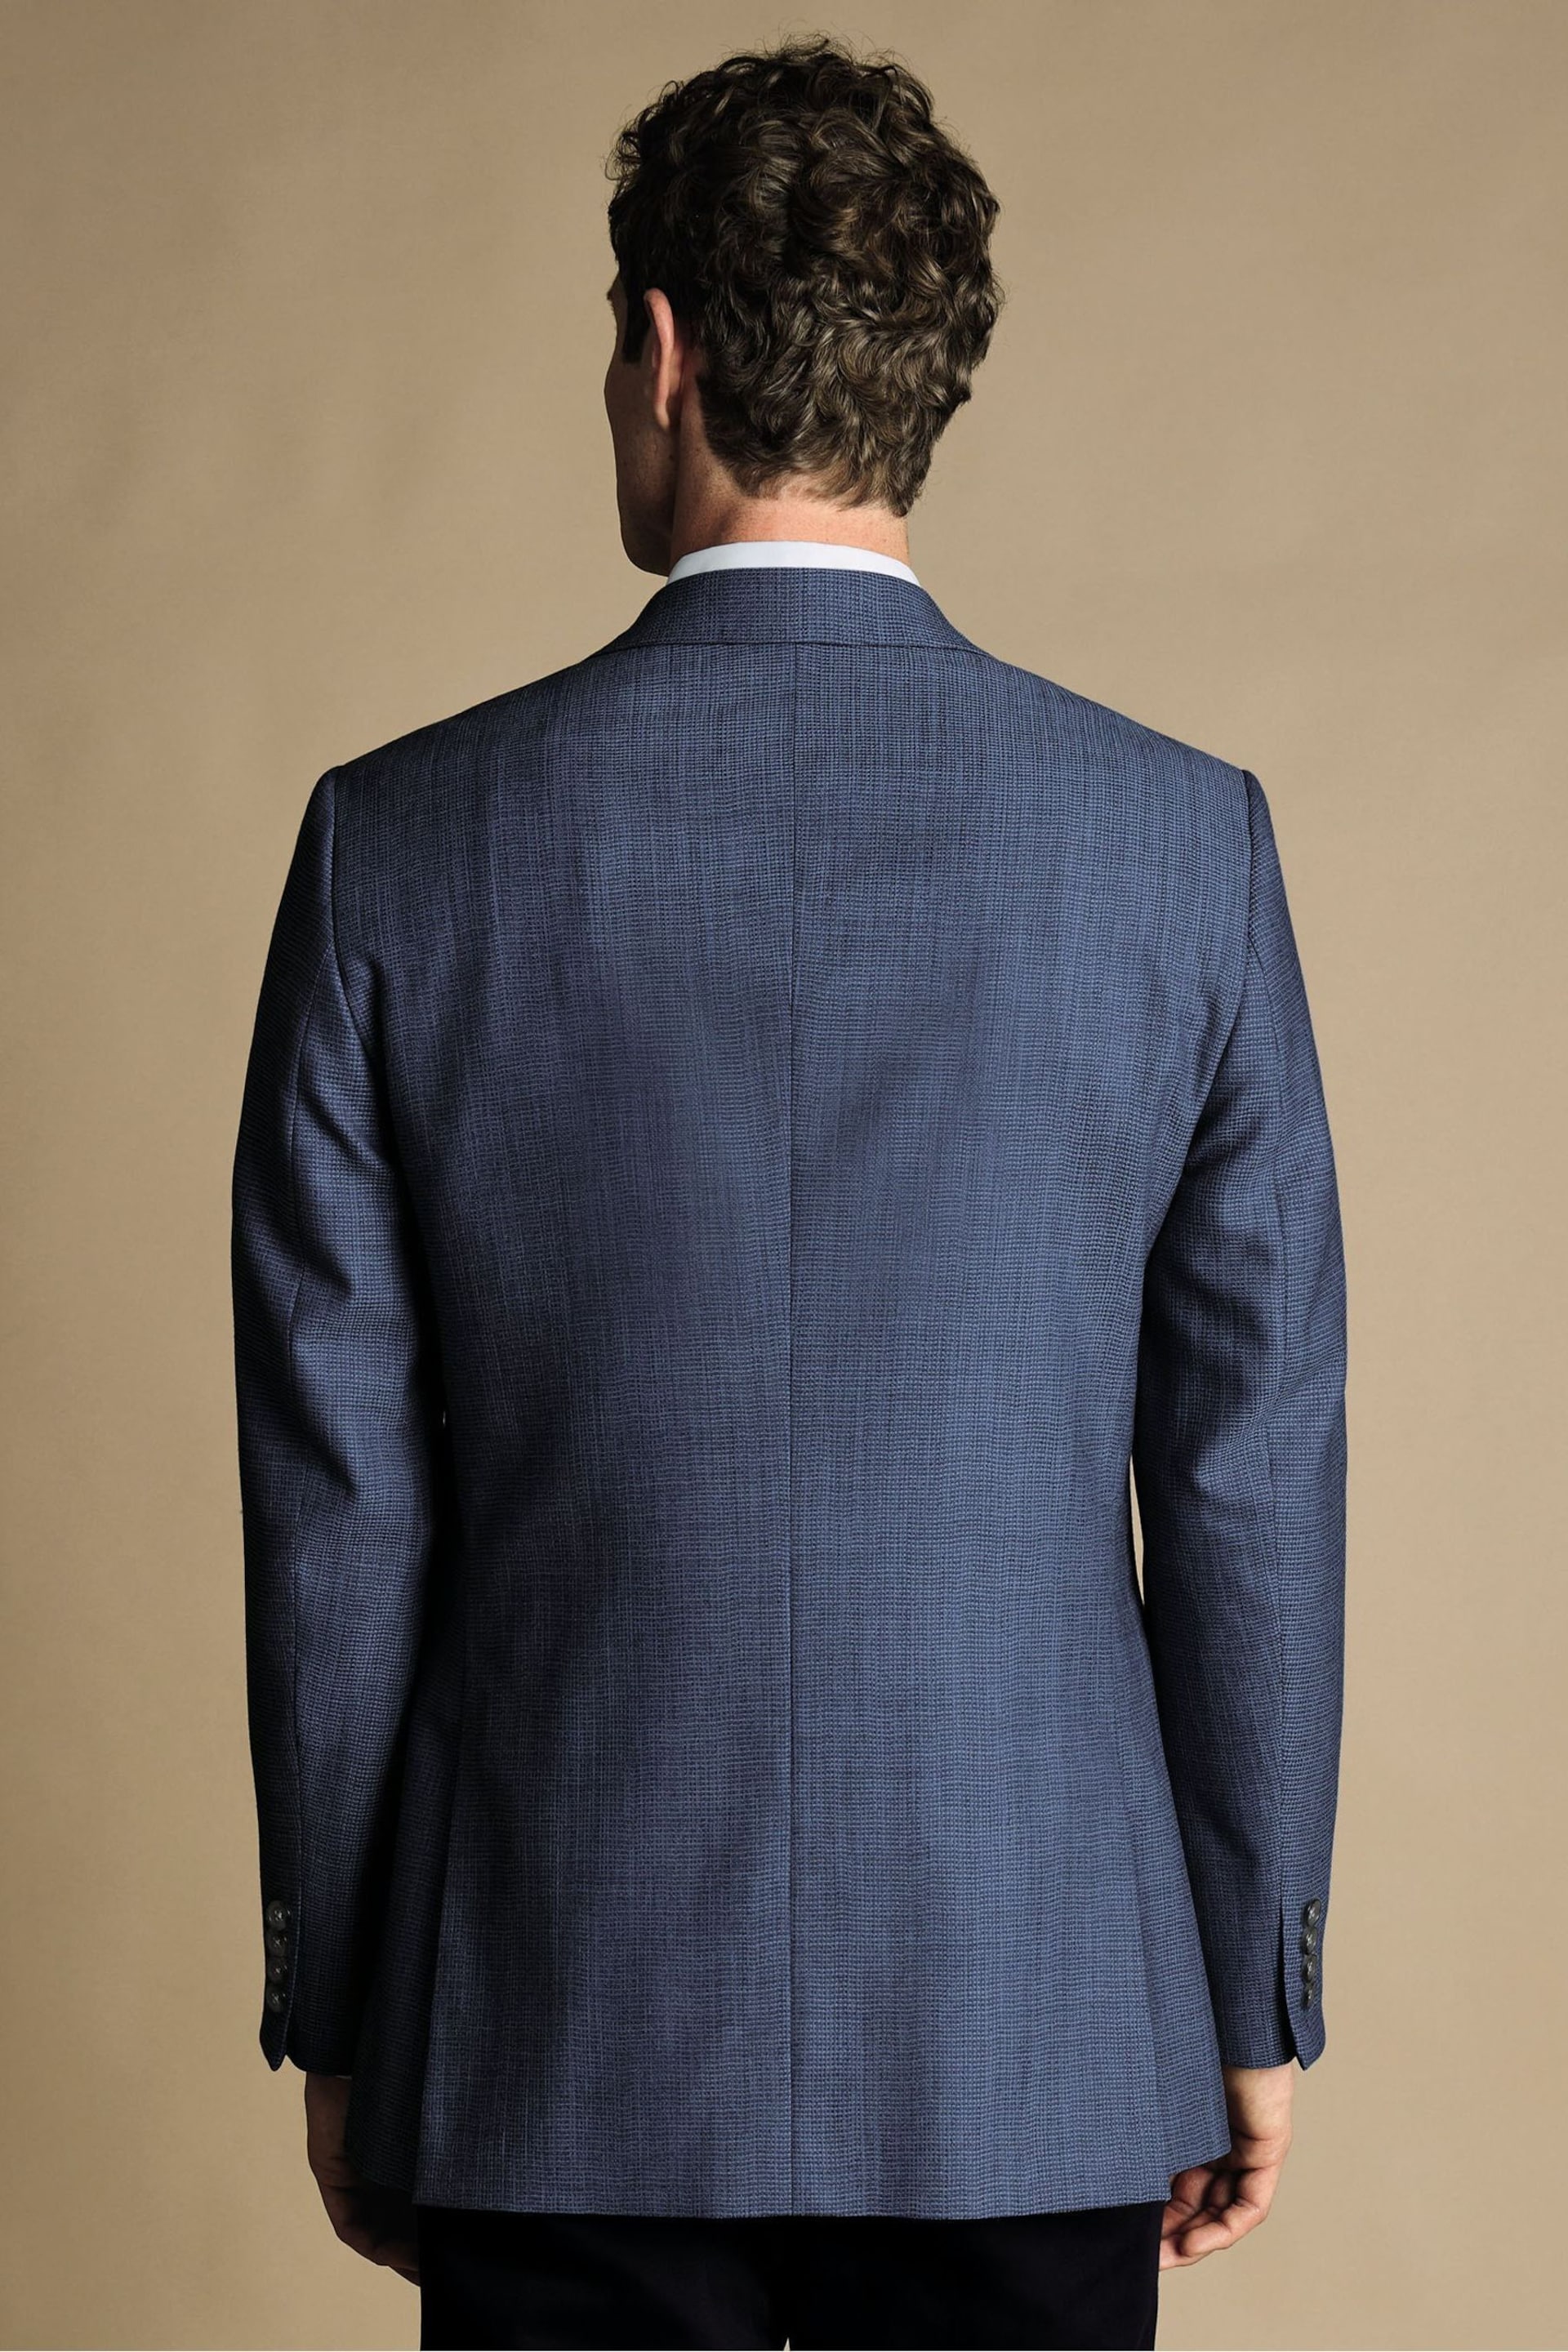 Charles Tyrwhitt Navy Blue Slim Fit Proper Blazer Jacket - Image 2 of 5